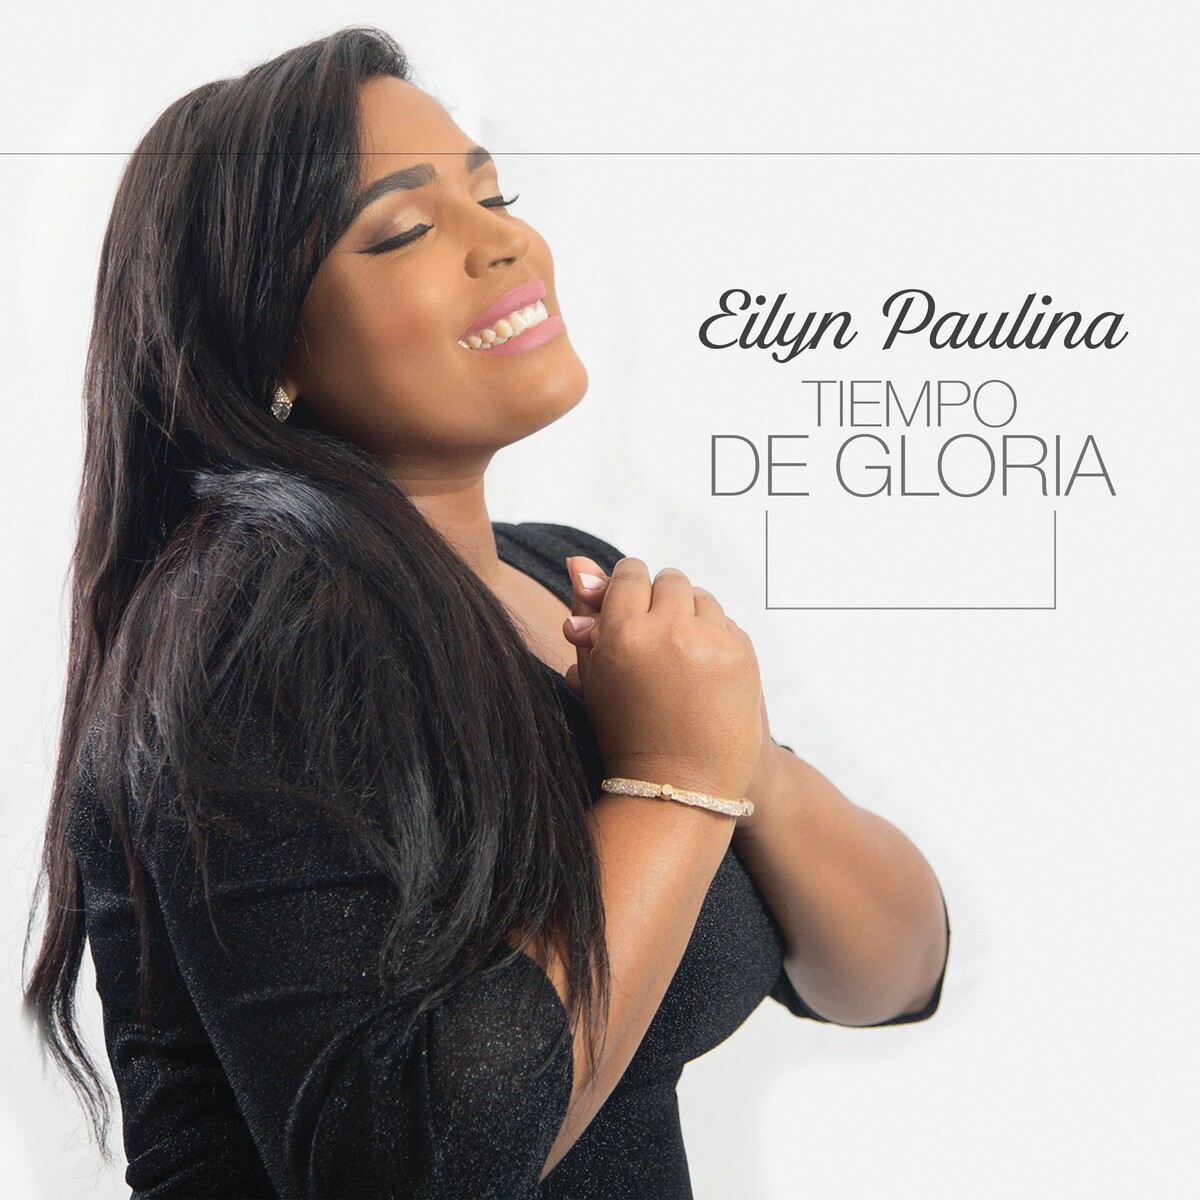 Eilyn Paulina – Tiempo de Gloria 2018